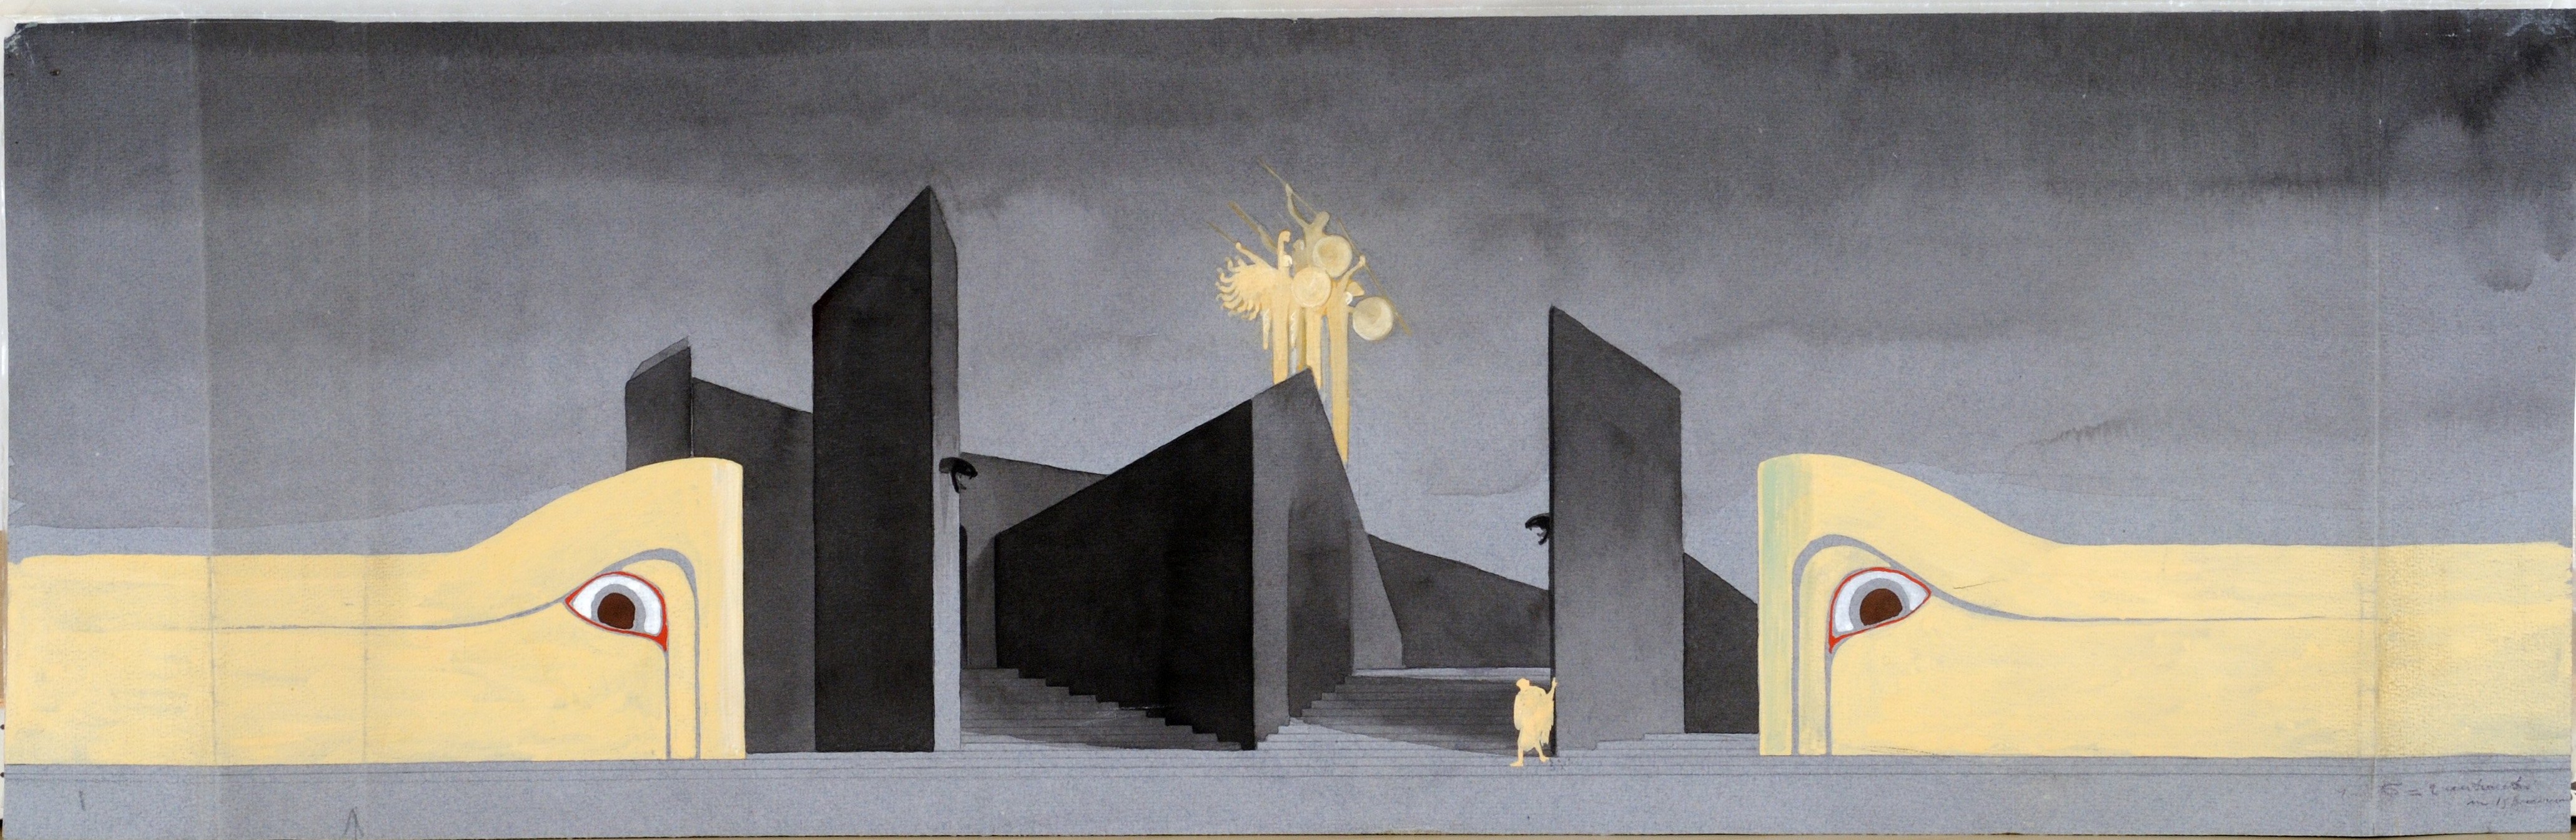 Bozzetto di scenografia per il Ciclo Tebano, 1927.  Archivio dell’Opera di Duilio Cambellotti, Roma